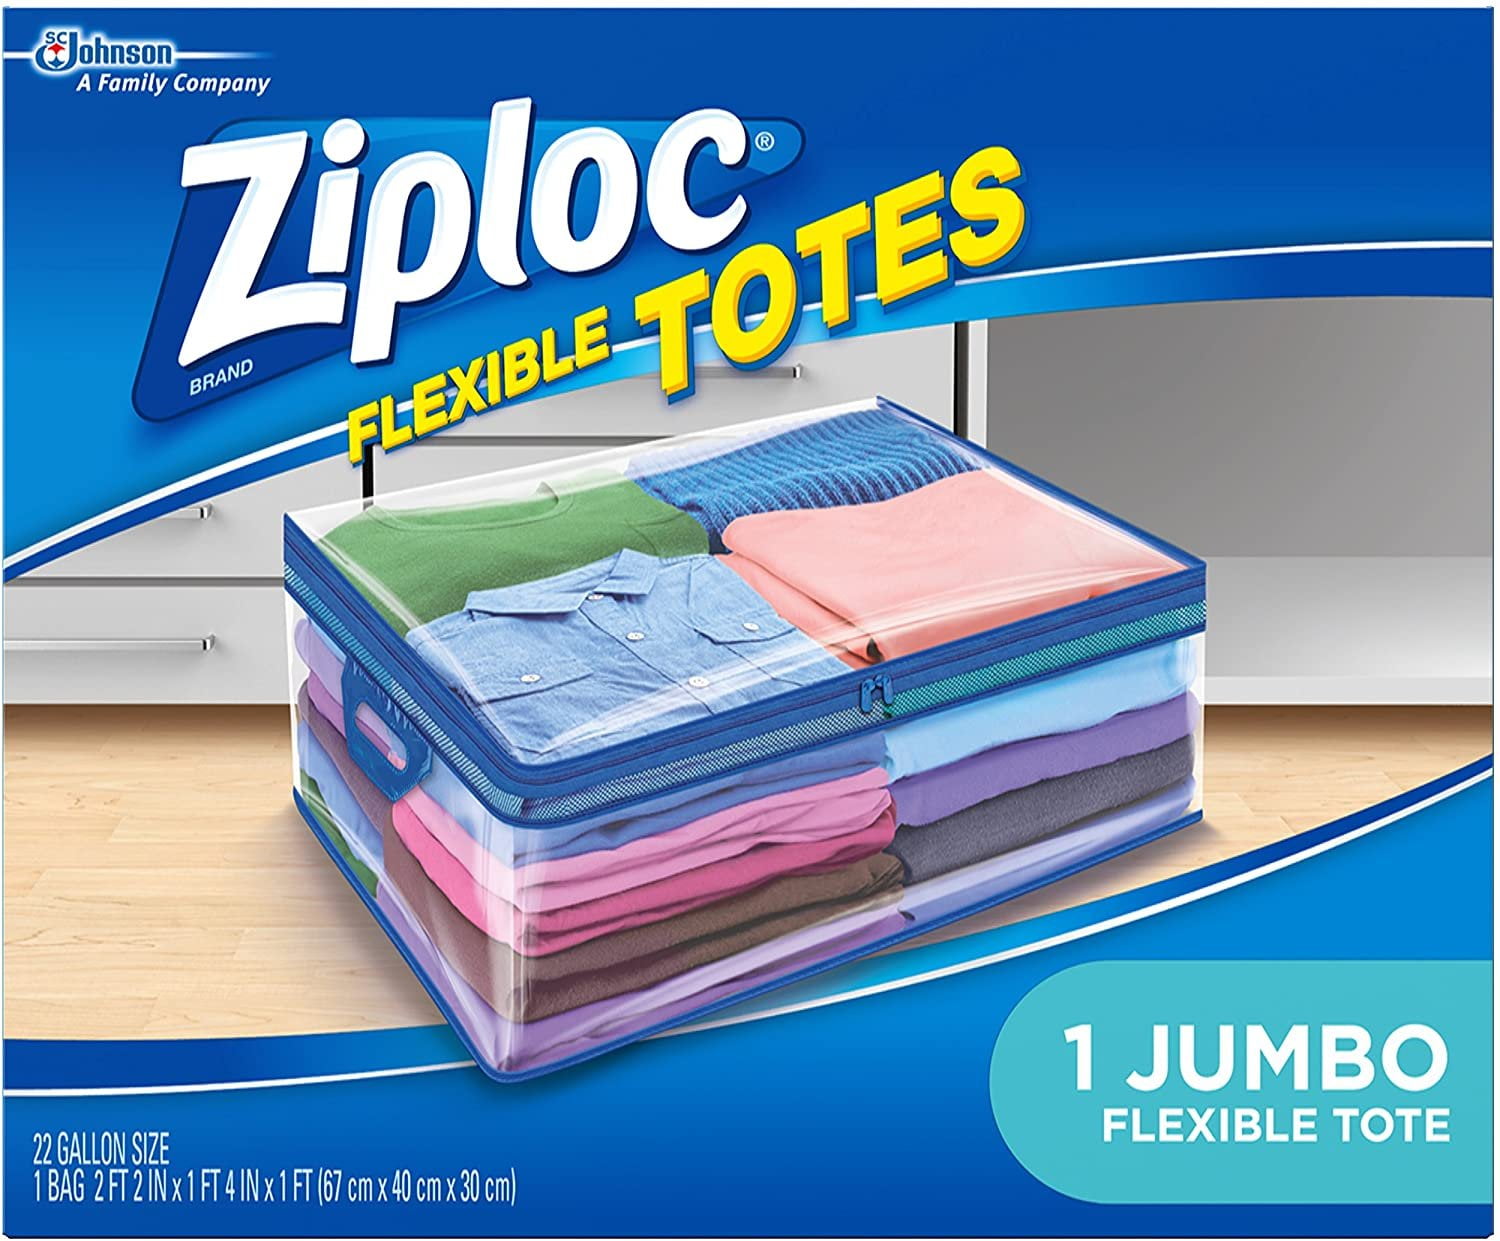 Ziploc® 00310 Storage Bag with Smart Zip Plus® Seal, 1 Qt, 48